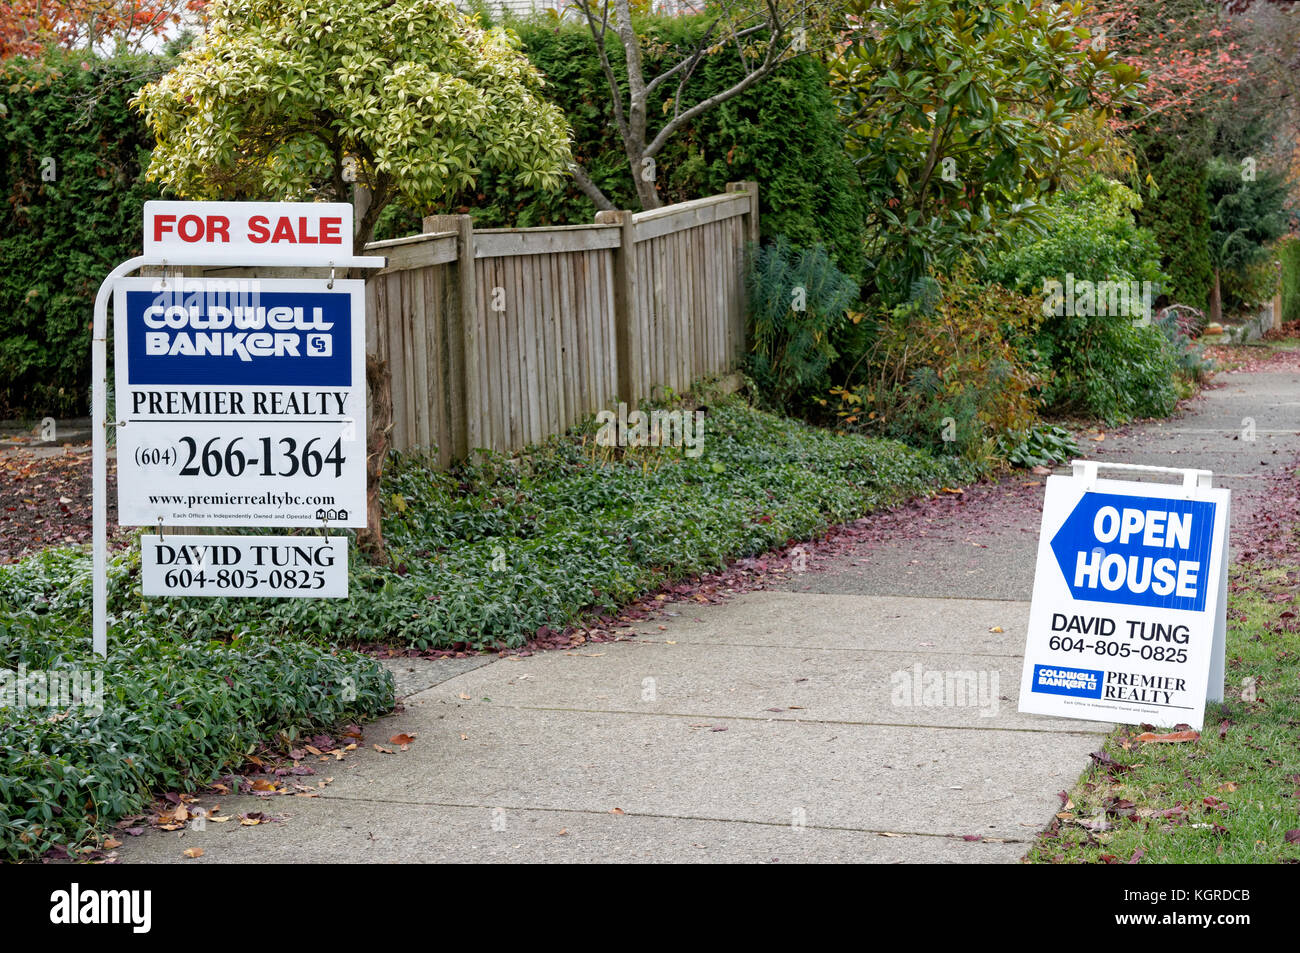 Maison à vendre et open house immo signes sur une rue résidentielle dans la région de Vancouver, BC, Canada Banque D'Images